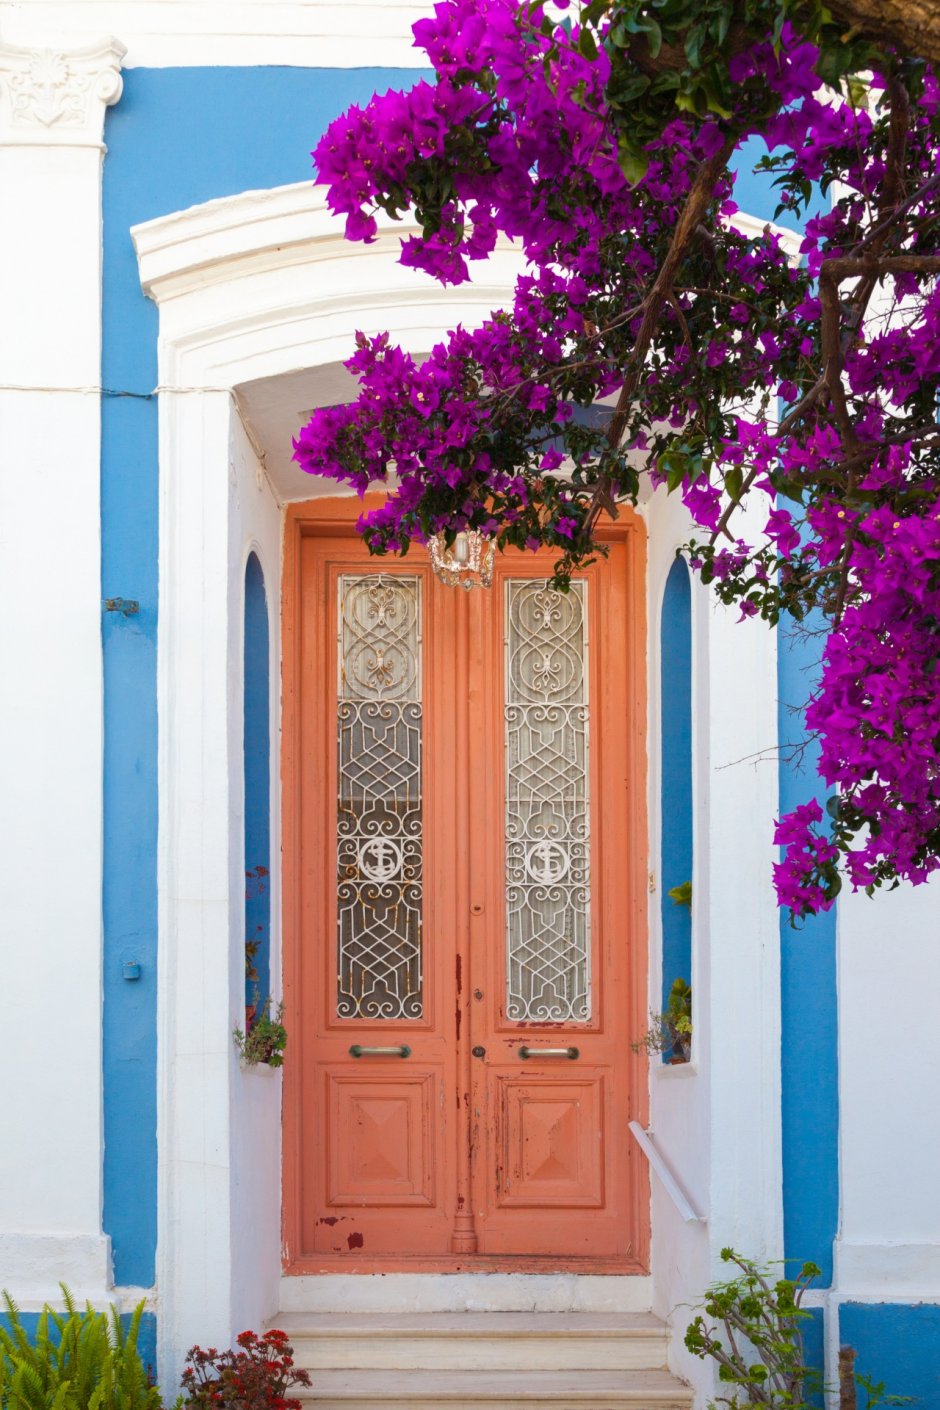 Греция дверь